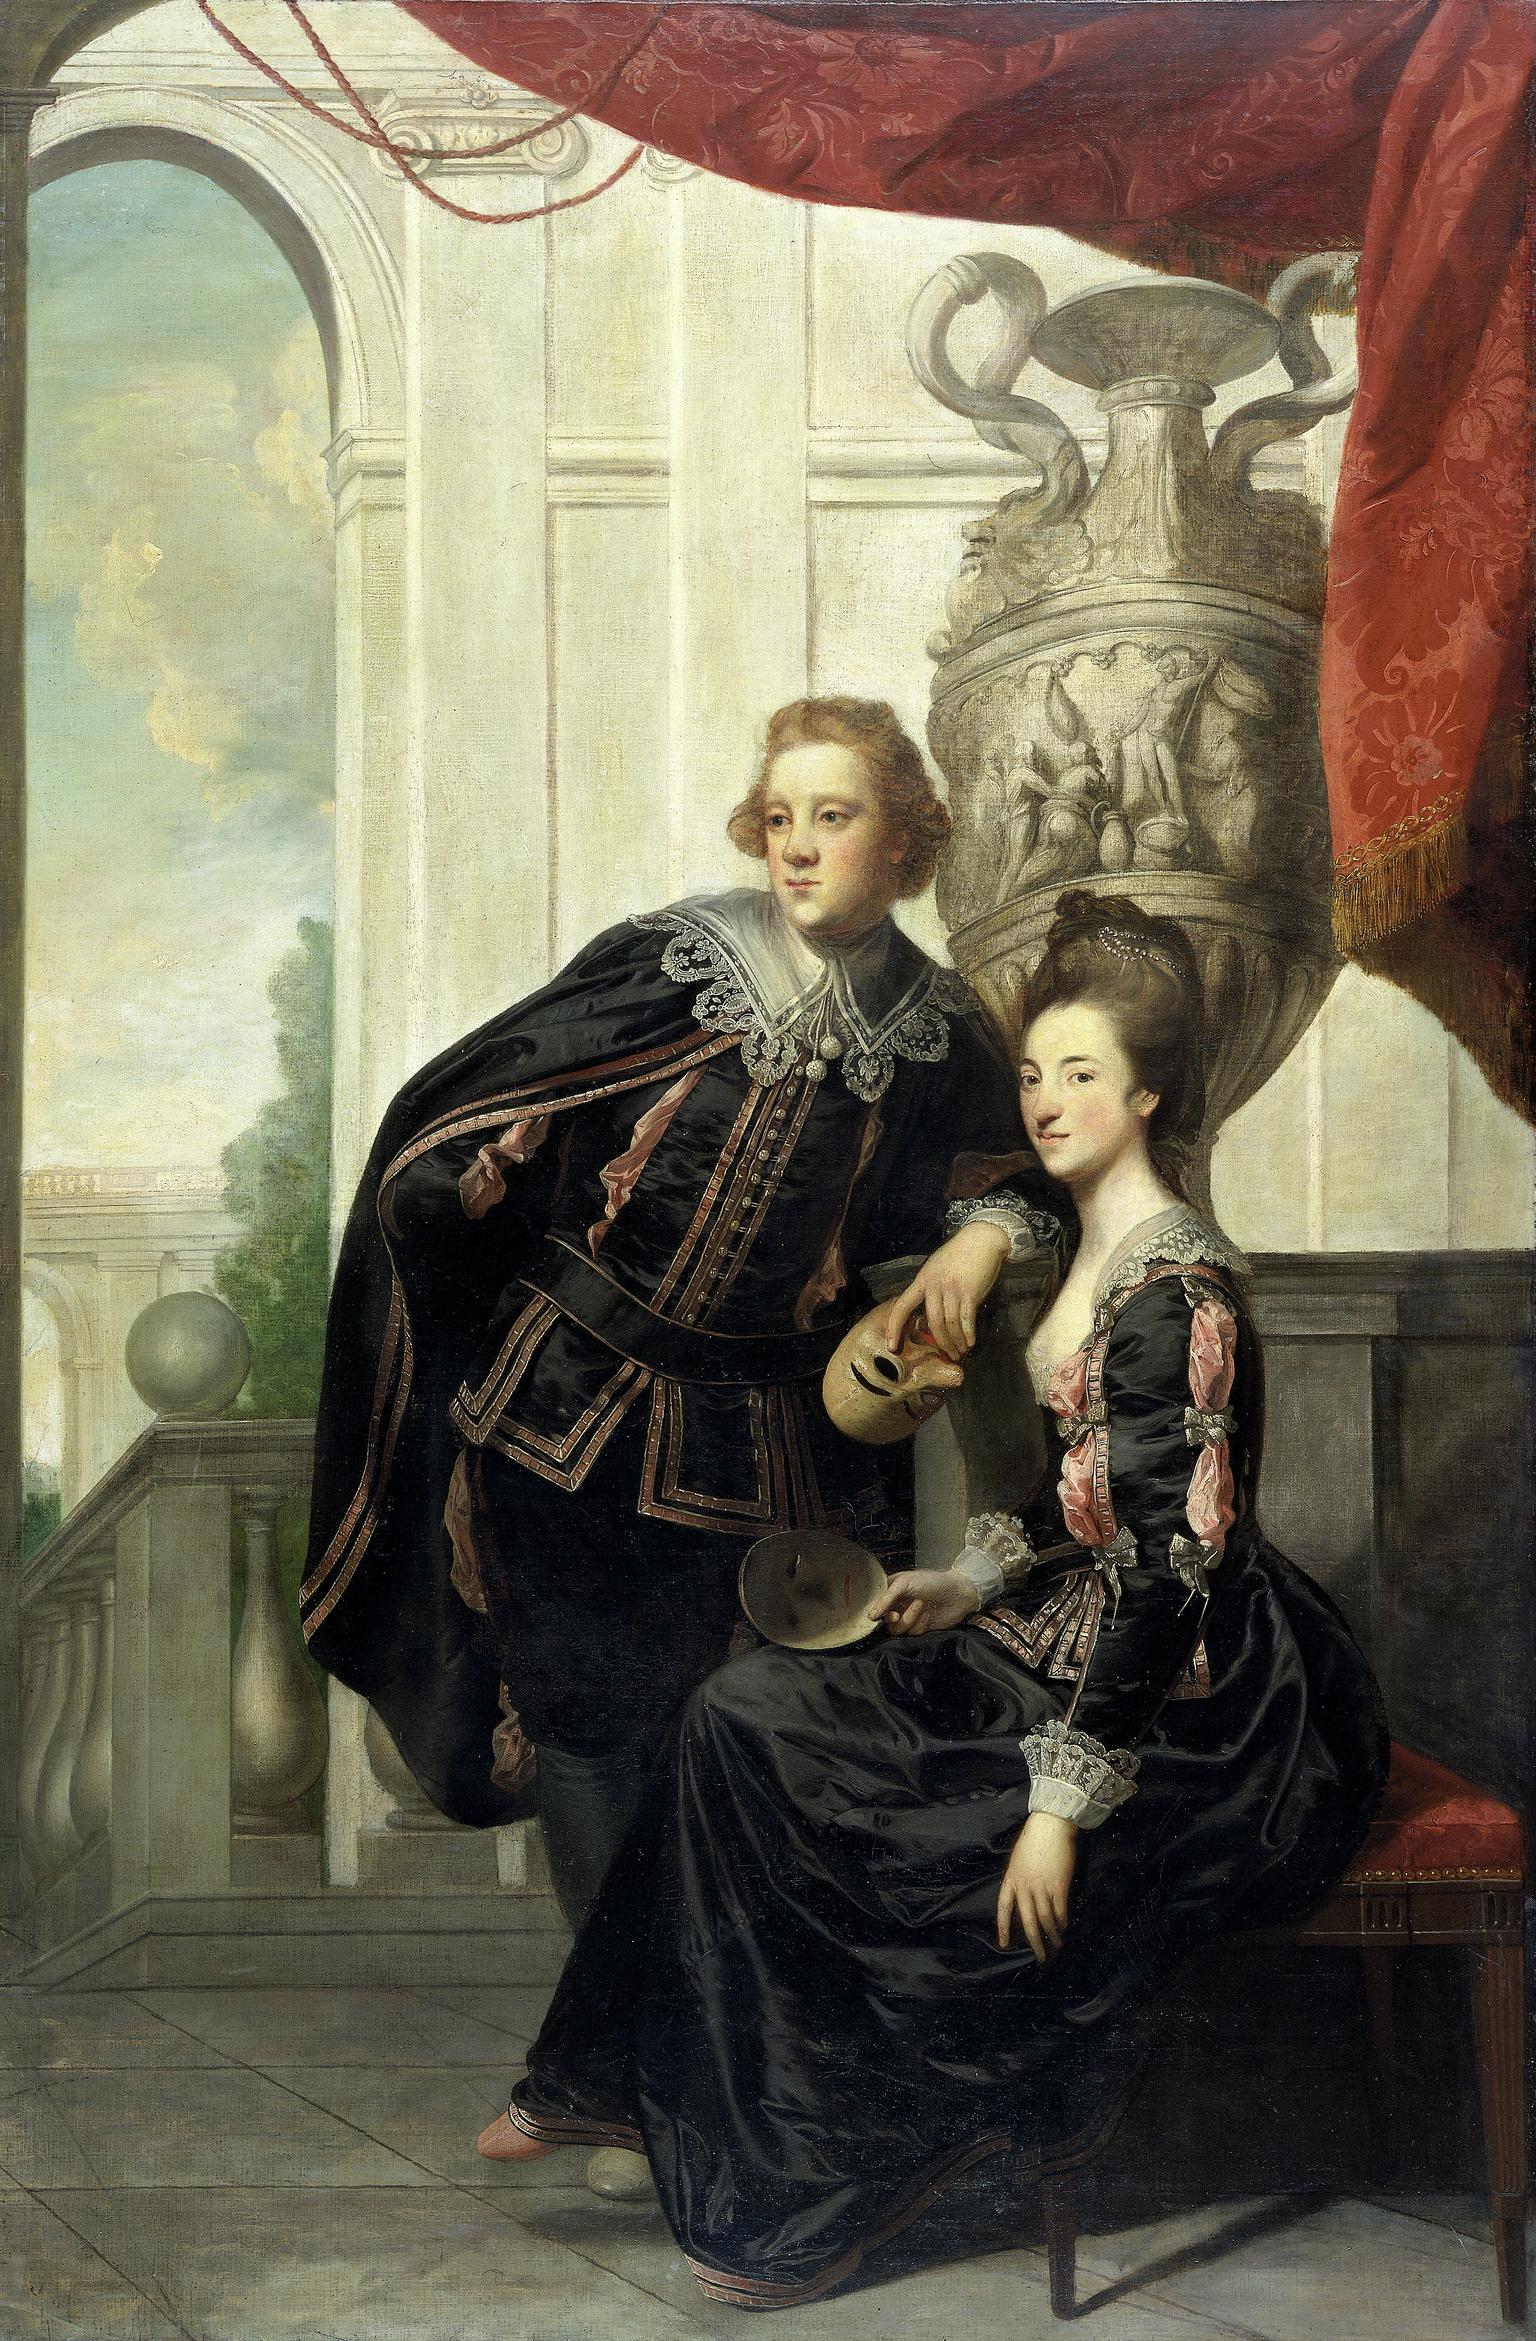 Sir Watkin Williams-Wynn and Lady Henrietta Williams-Wynn (Somerset) his wife, in masque costume